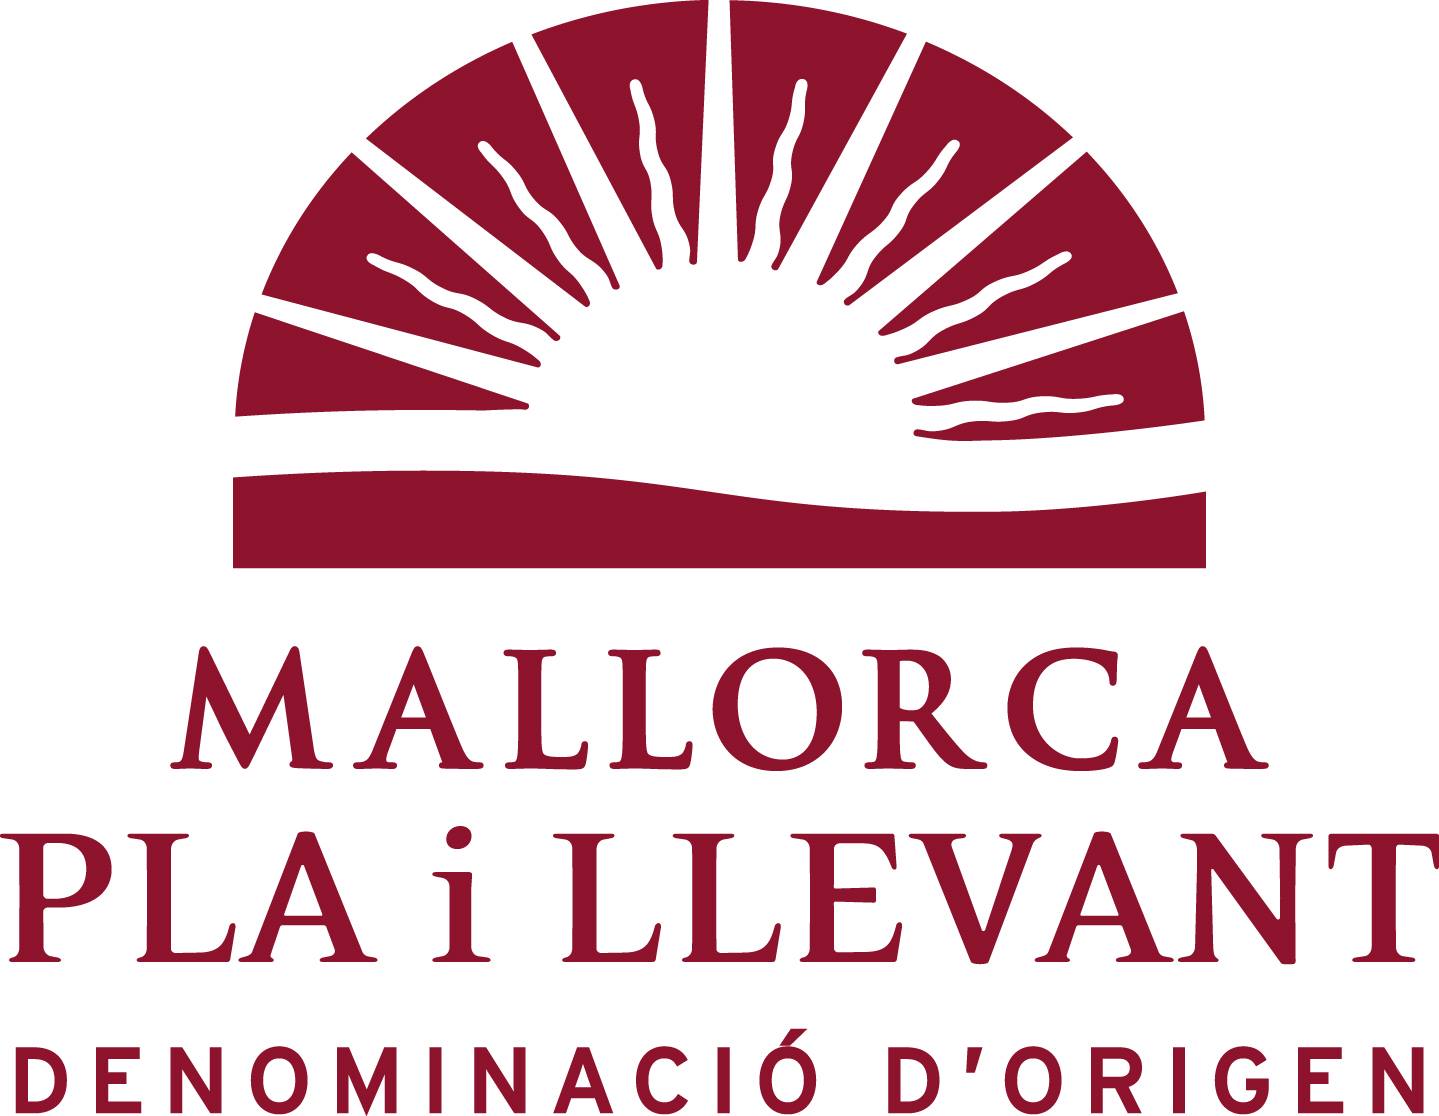 Pla i Llevant - Isole Baleari - Prodotti agroalimentari, denominazione d'origine e gastronomia delle Isole Baleari